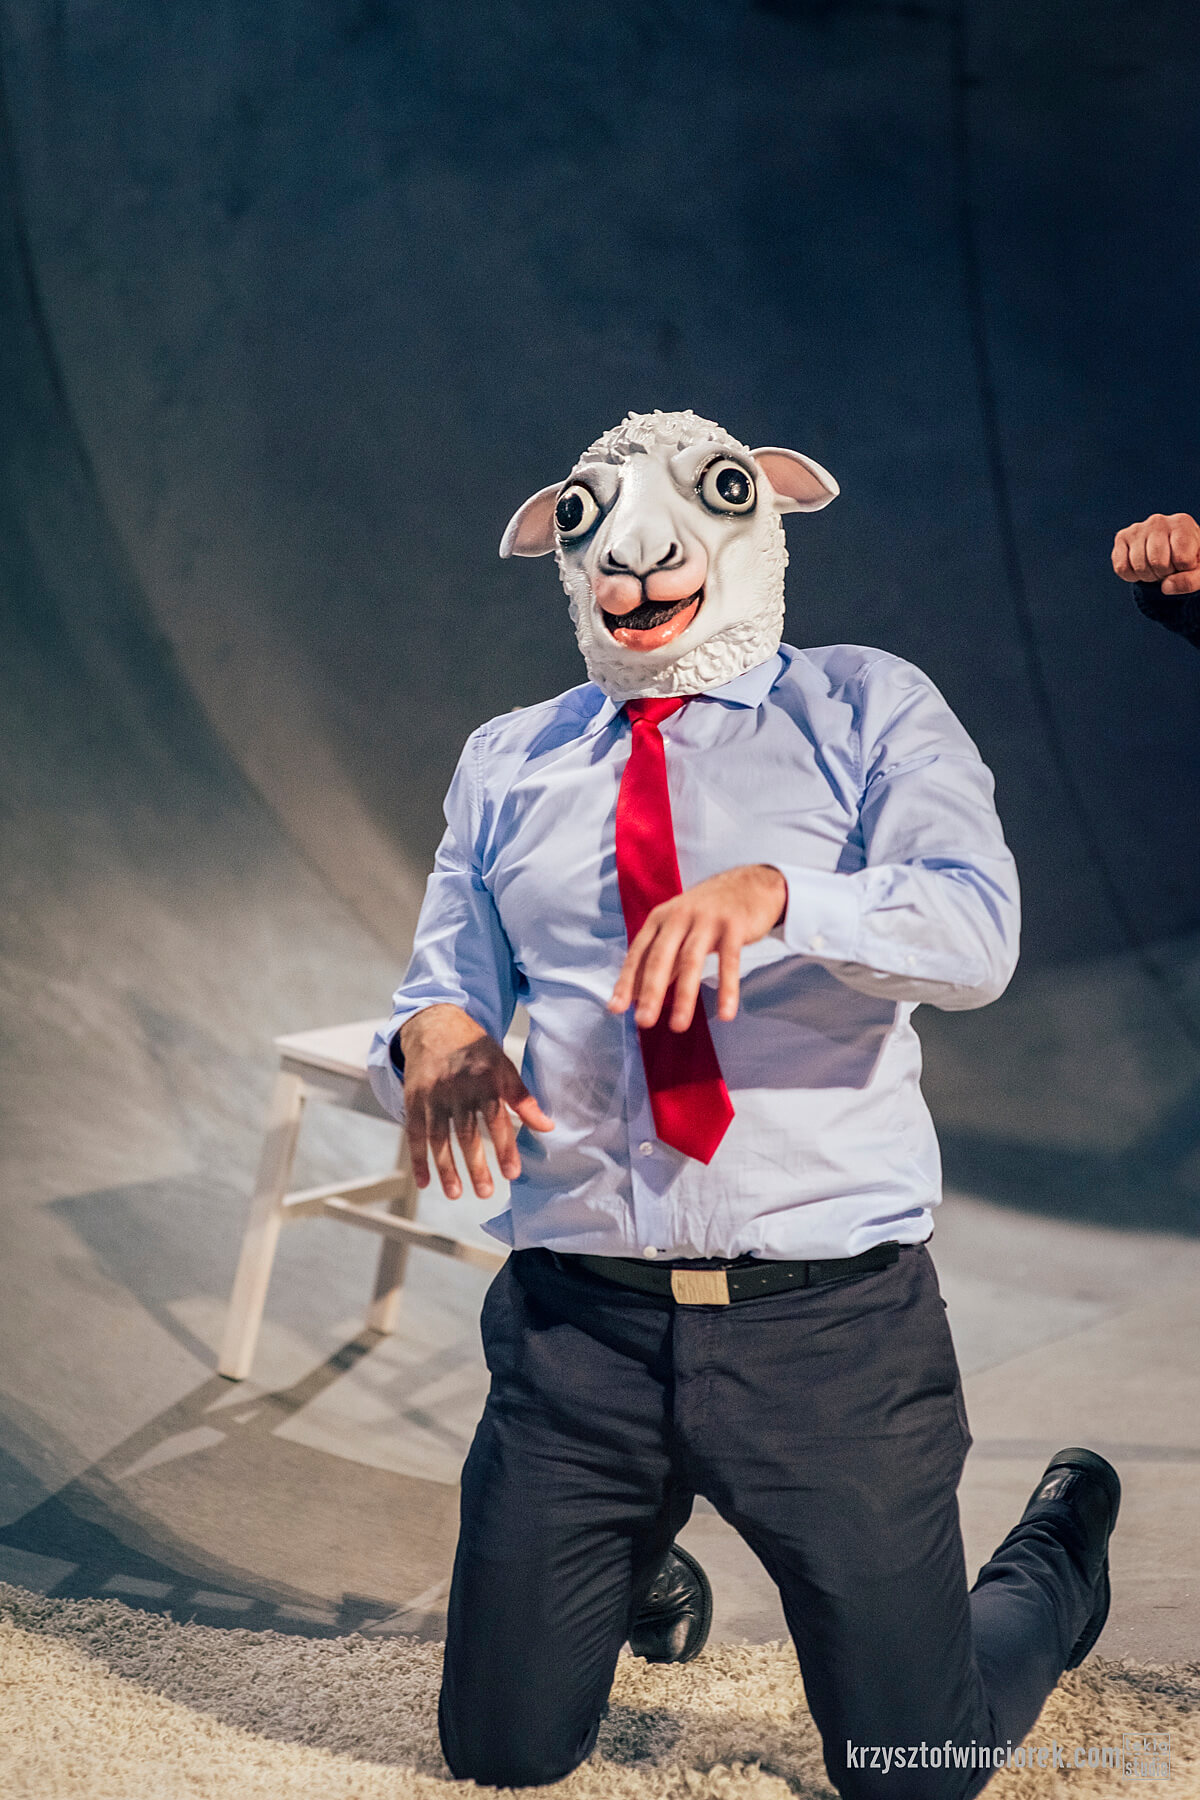 Aktor w koszuli z czerwonym krawatem i z maską owcy na głowie, na kolanach